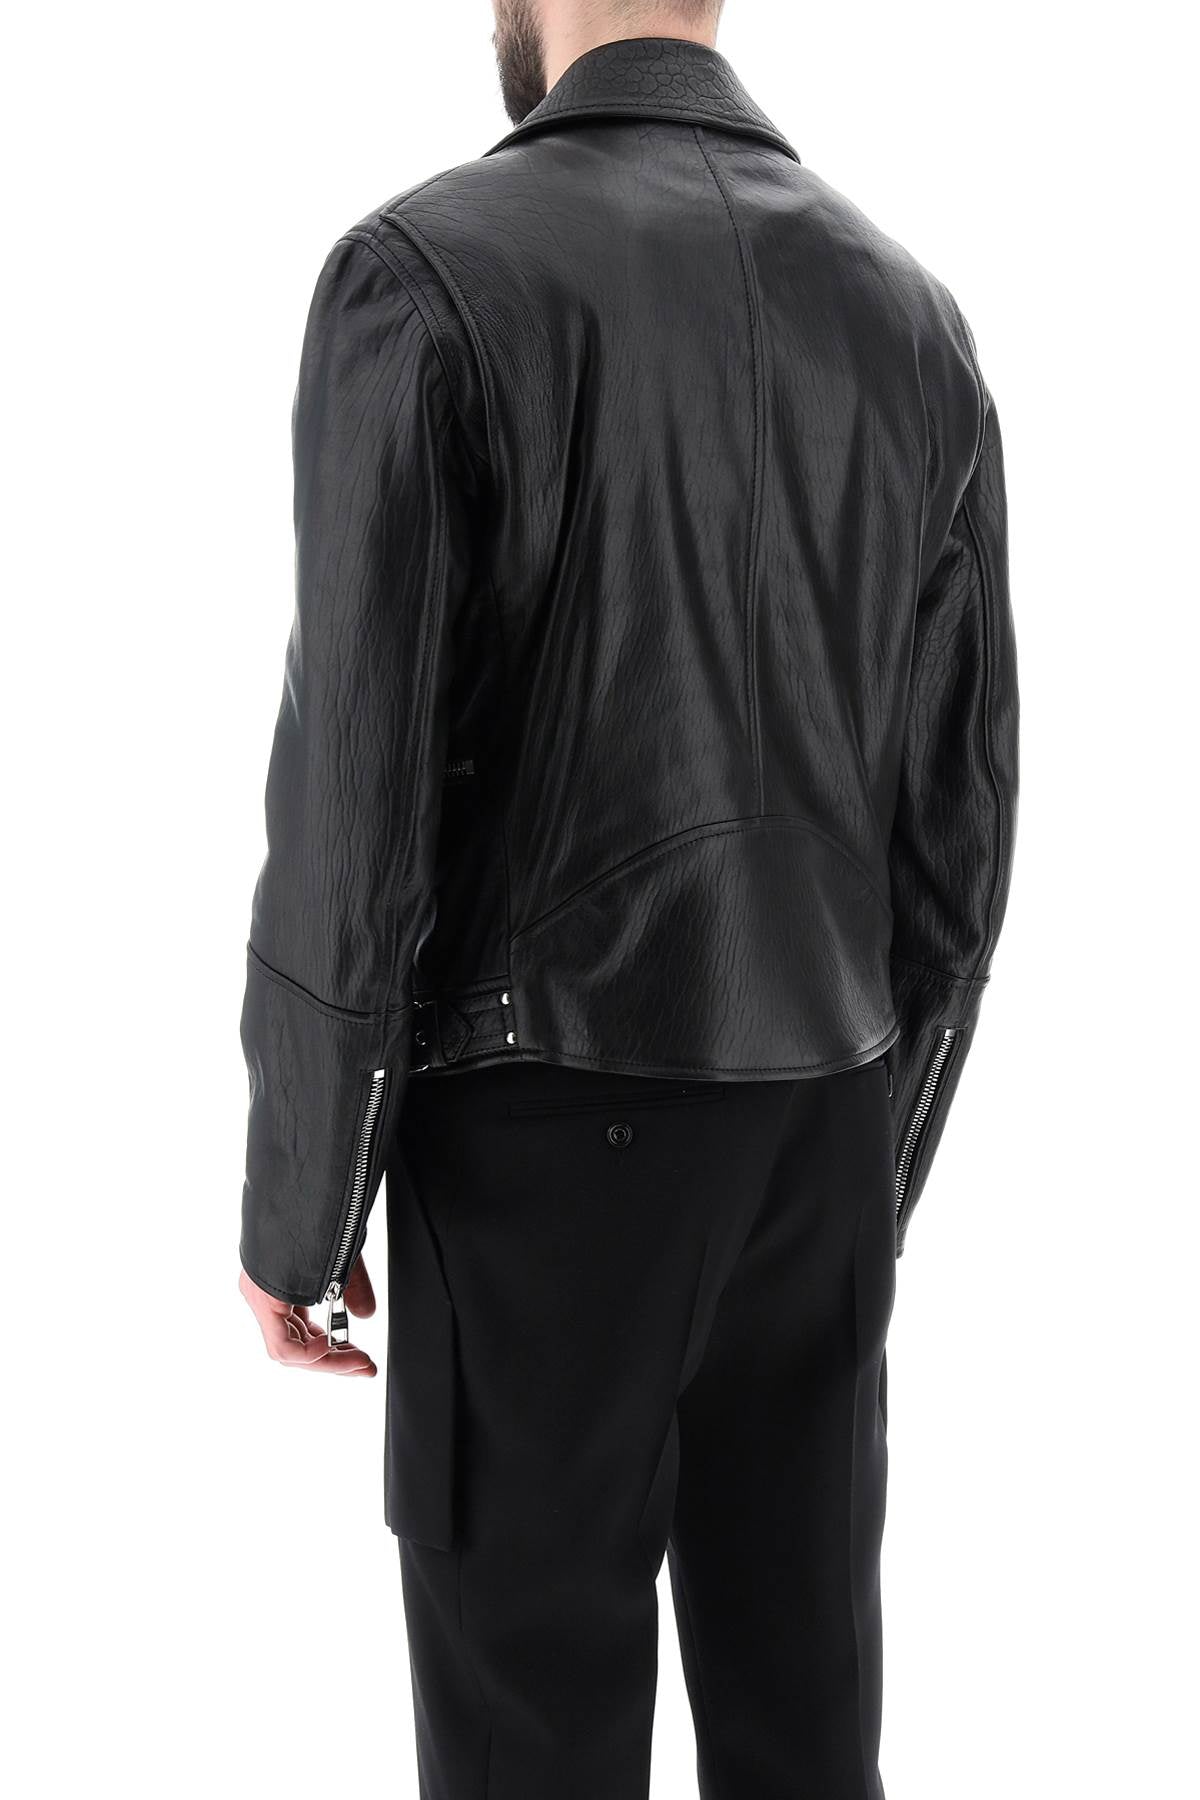 Alexander mcqueen leather biker jacket-2